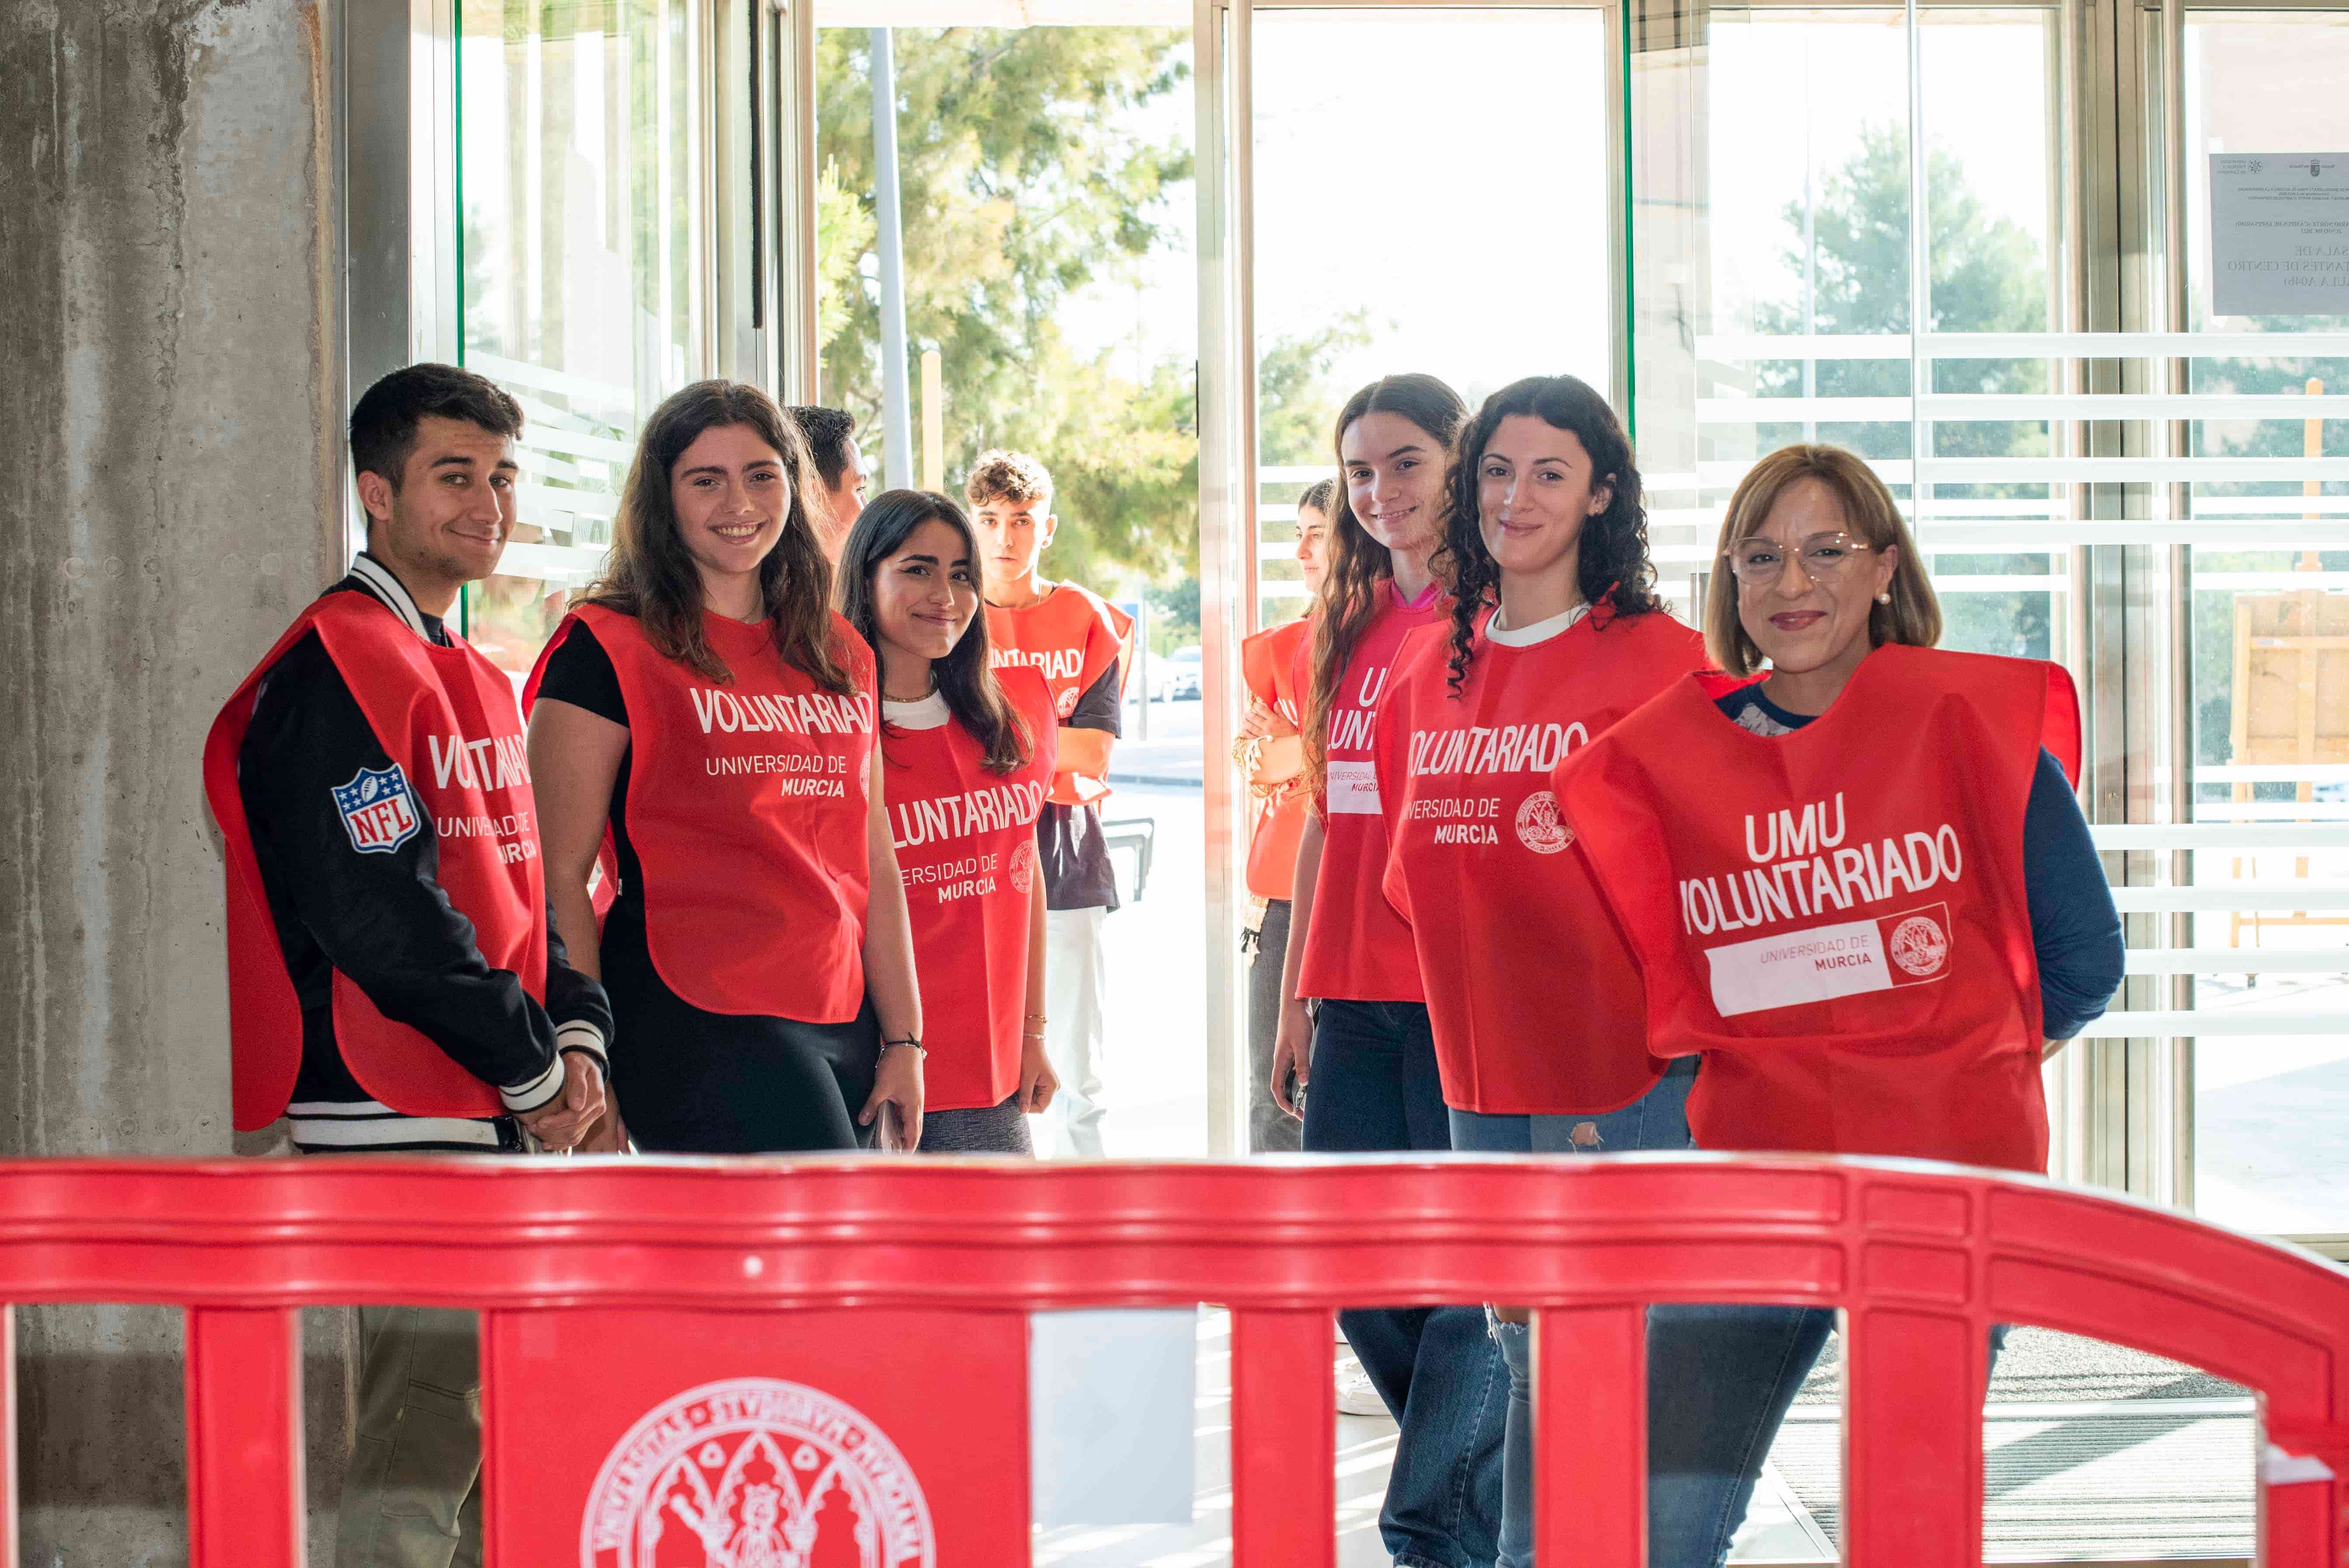 La UMU es la universidad española con más proyectos de voluntariado